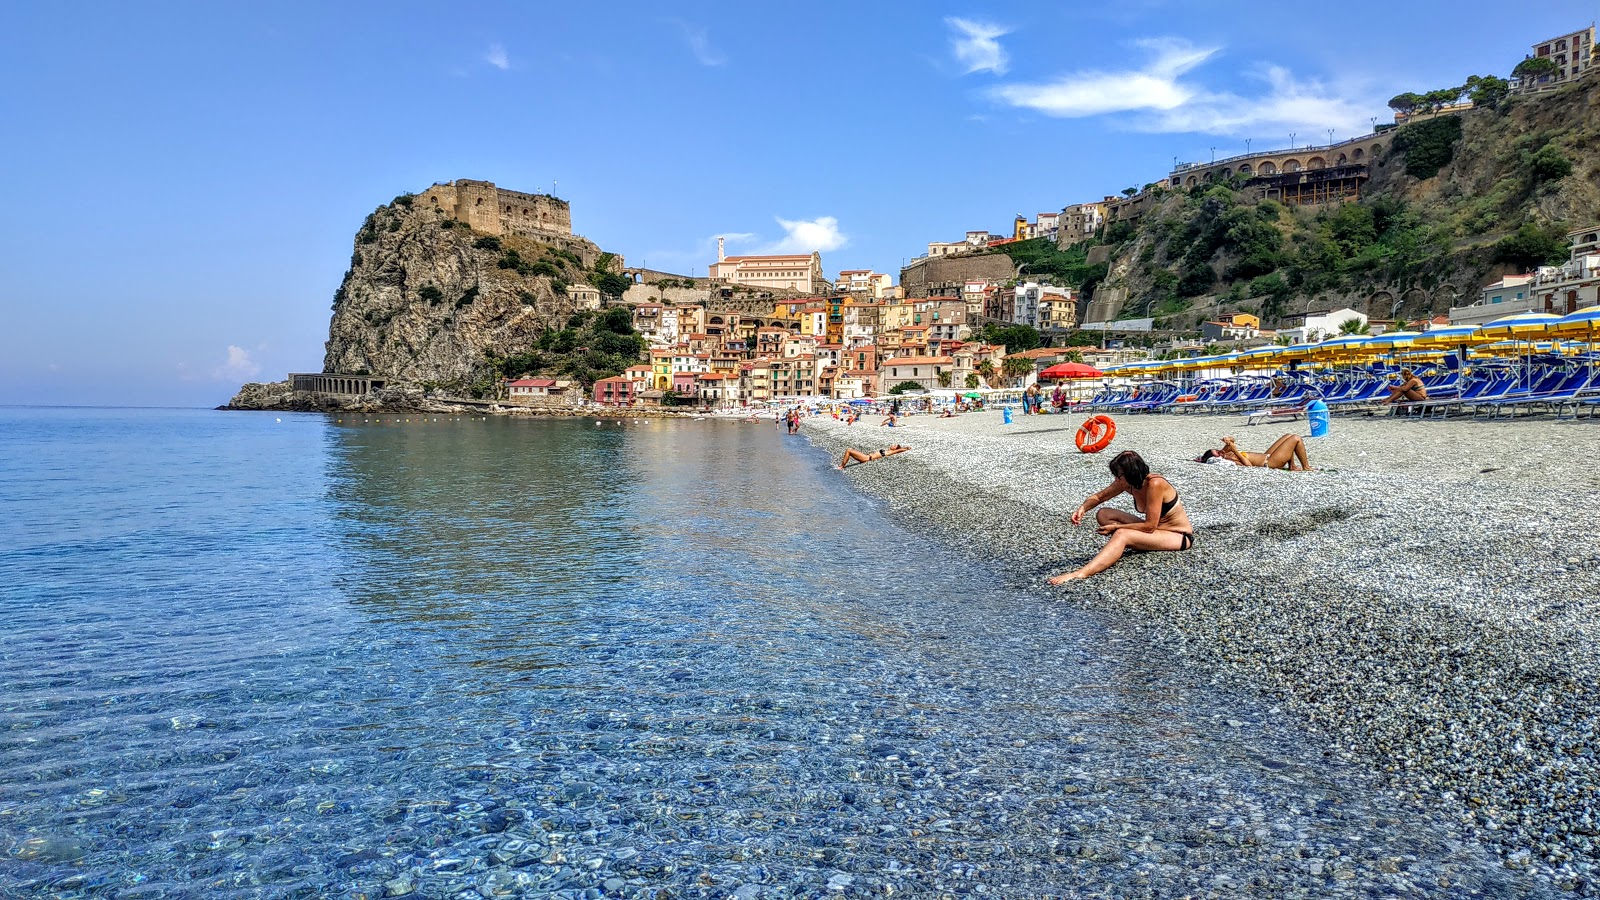 Valokuva Spiaggia Di Scillaista. pinnalla kirkas hiekka:n kanssa